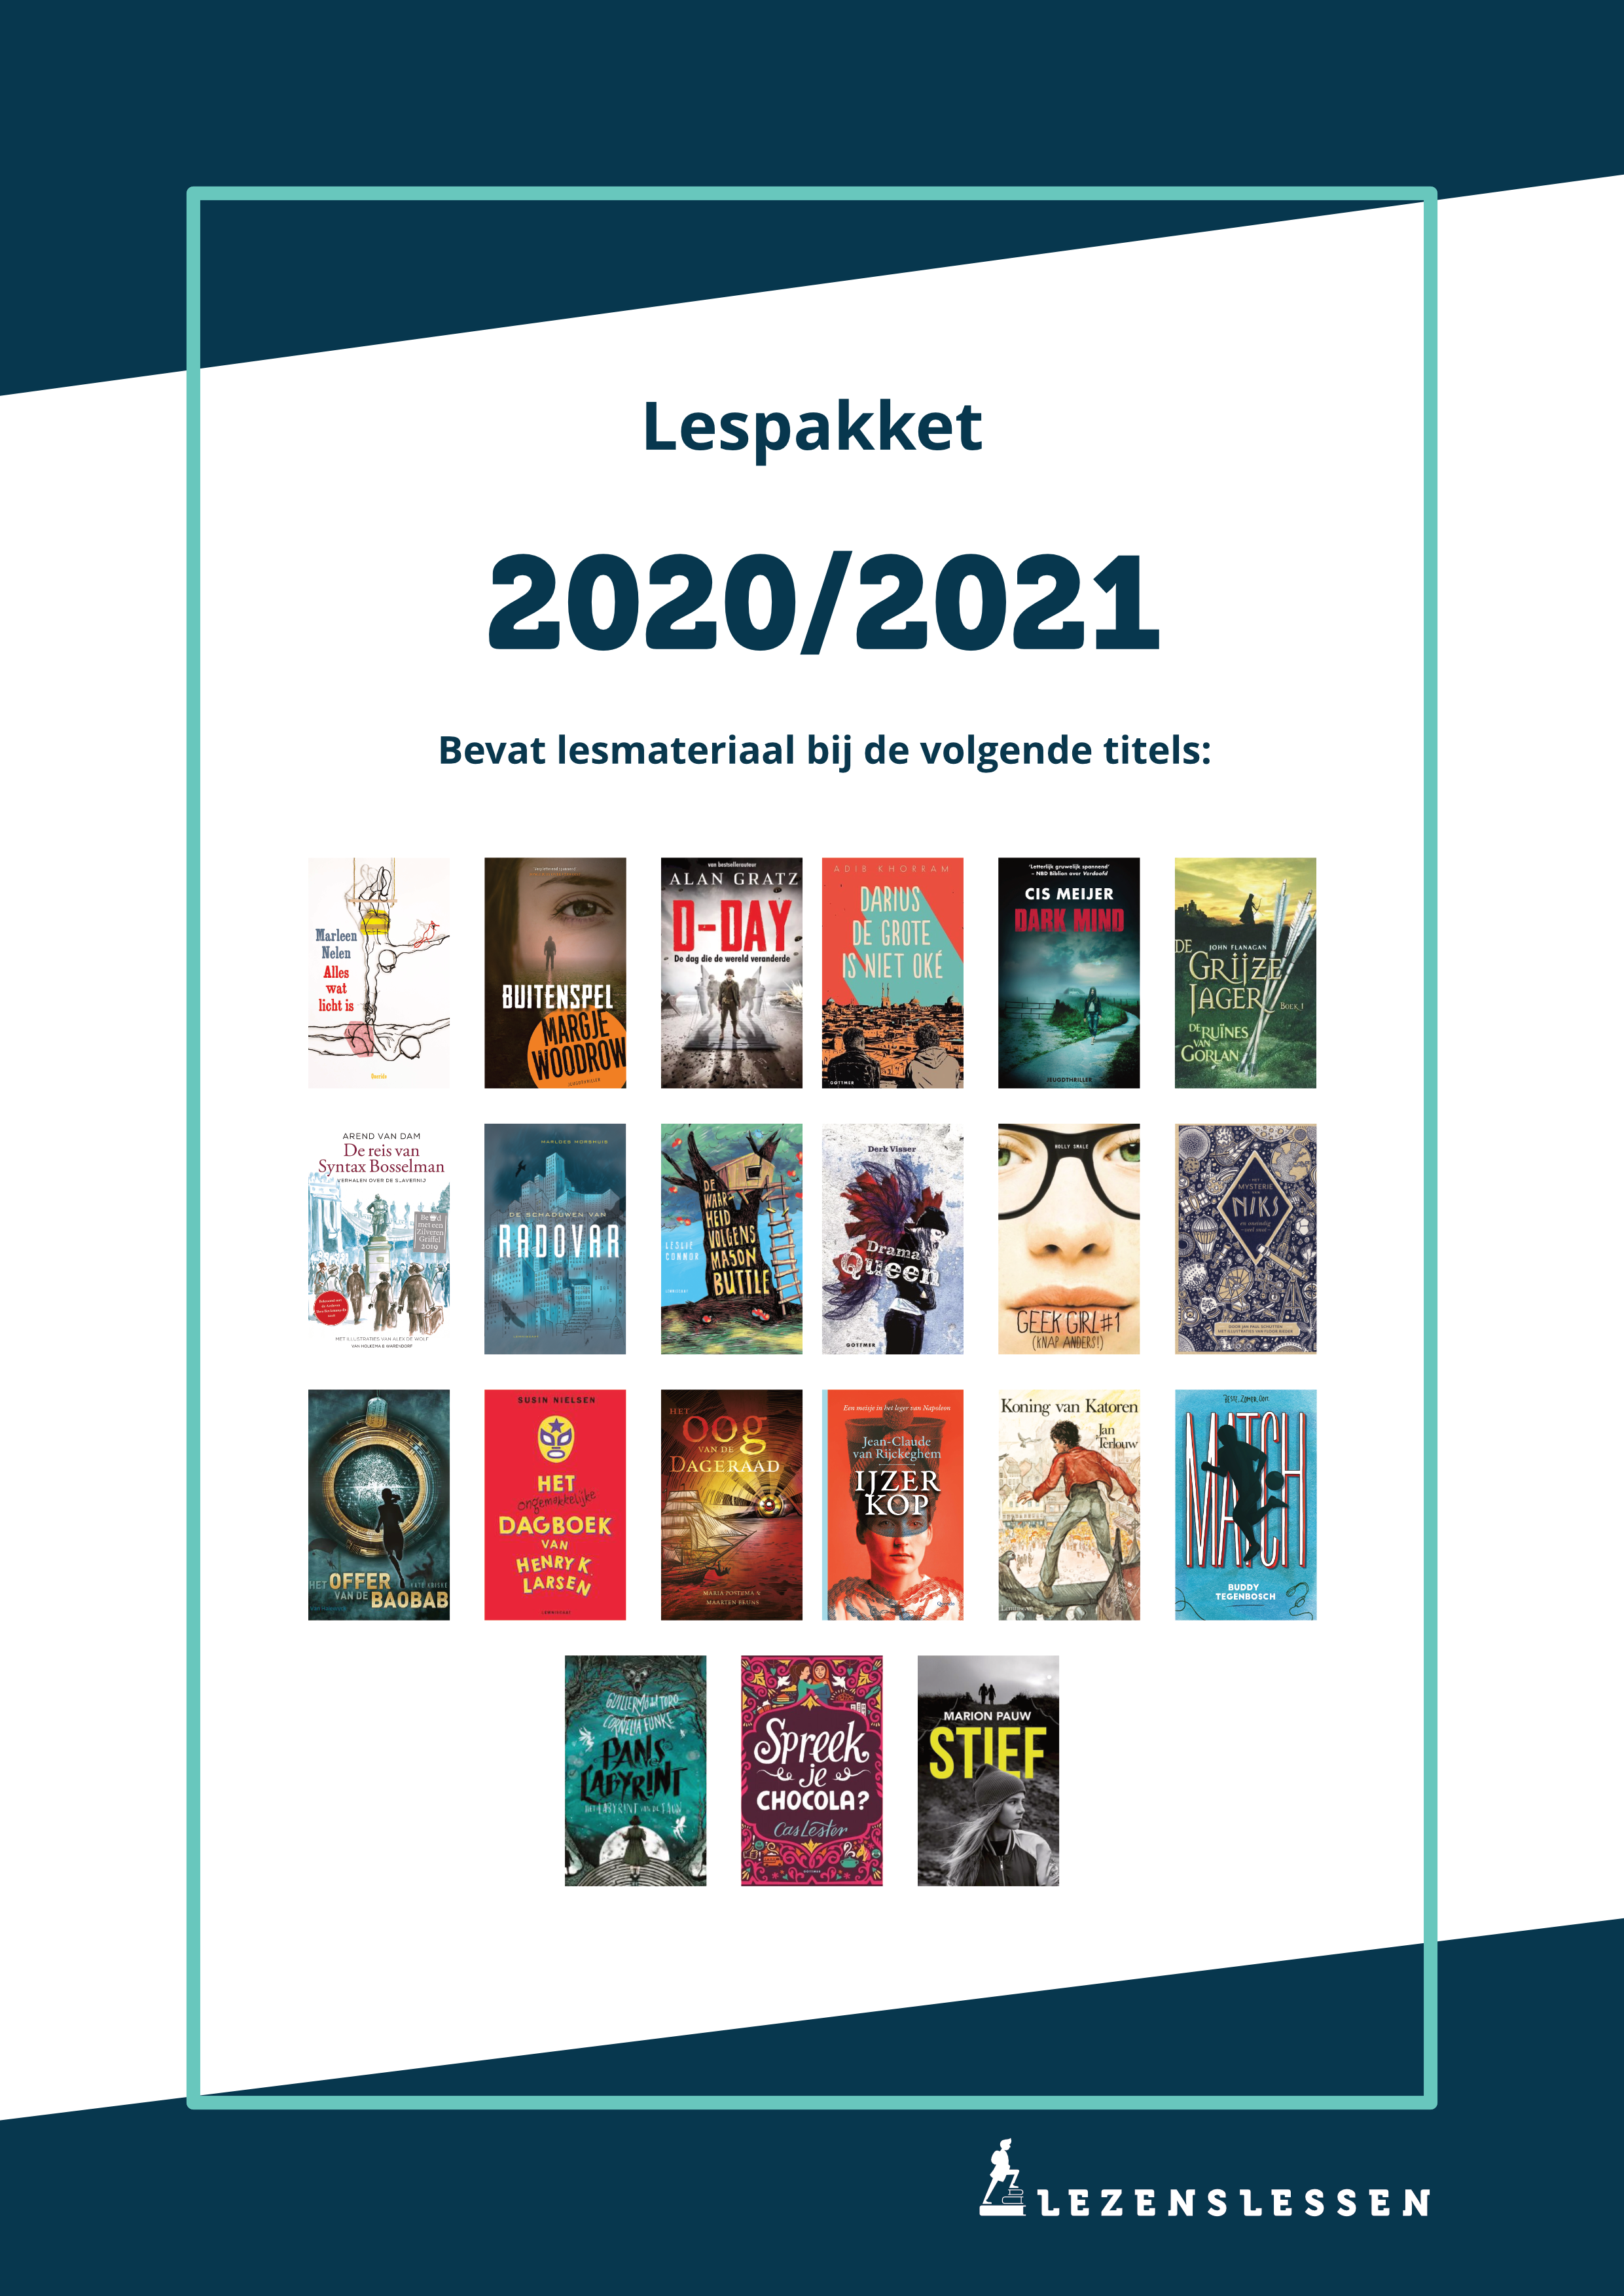 Afbeelding bij het Lespakket 2020/2021